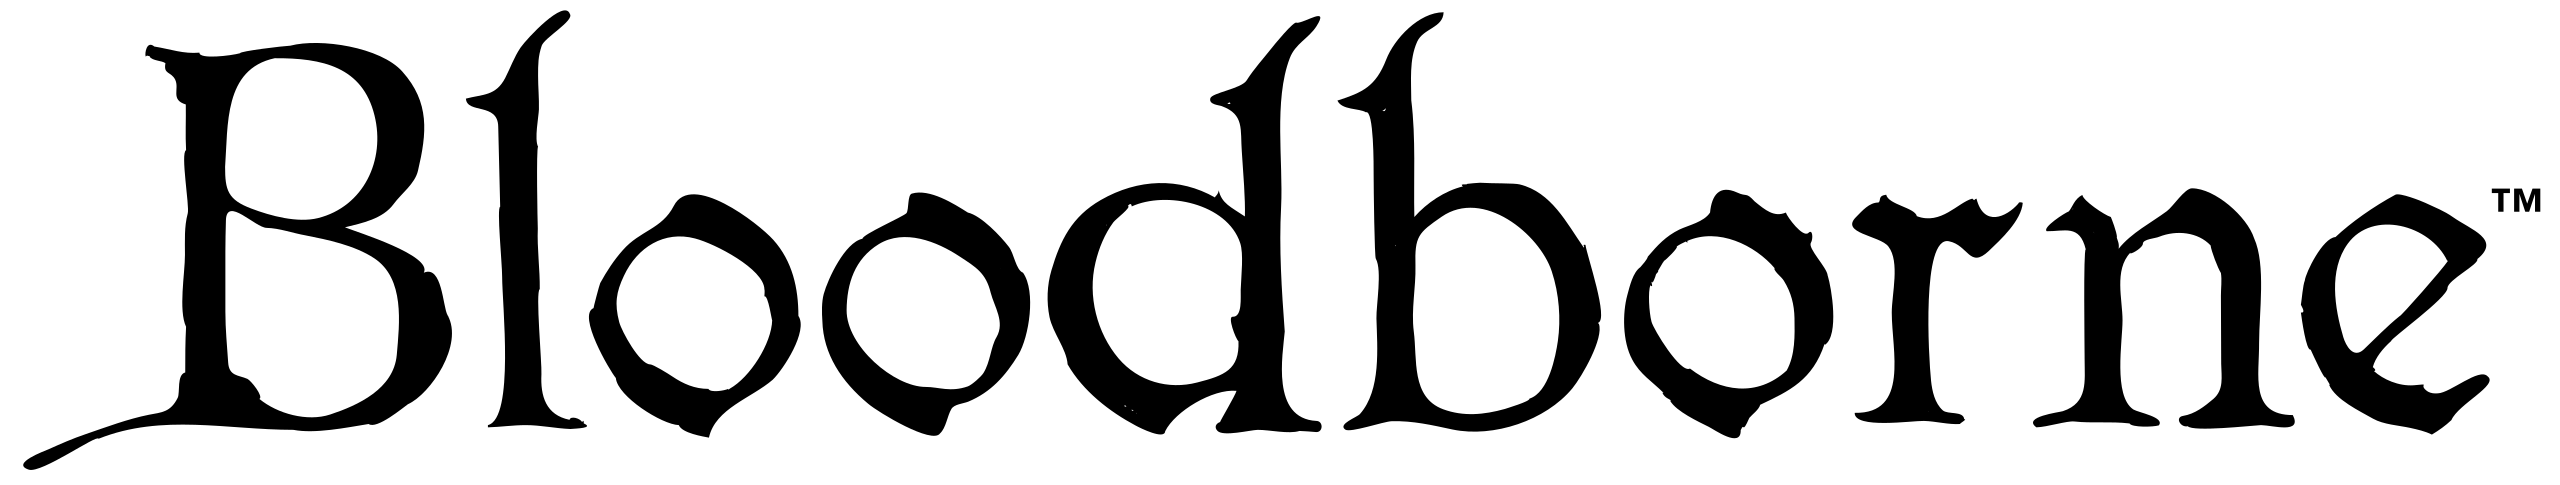 Bloodborne Logo PNG Image